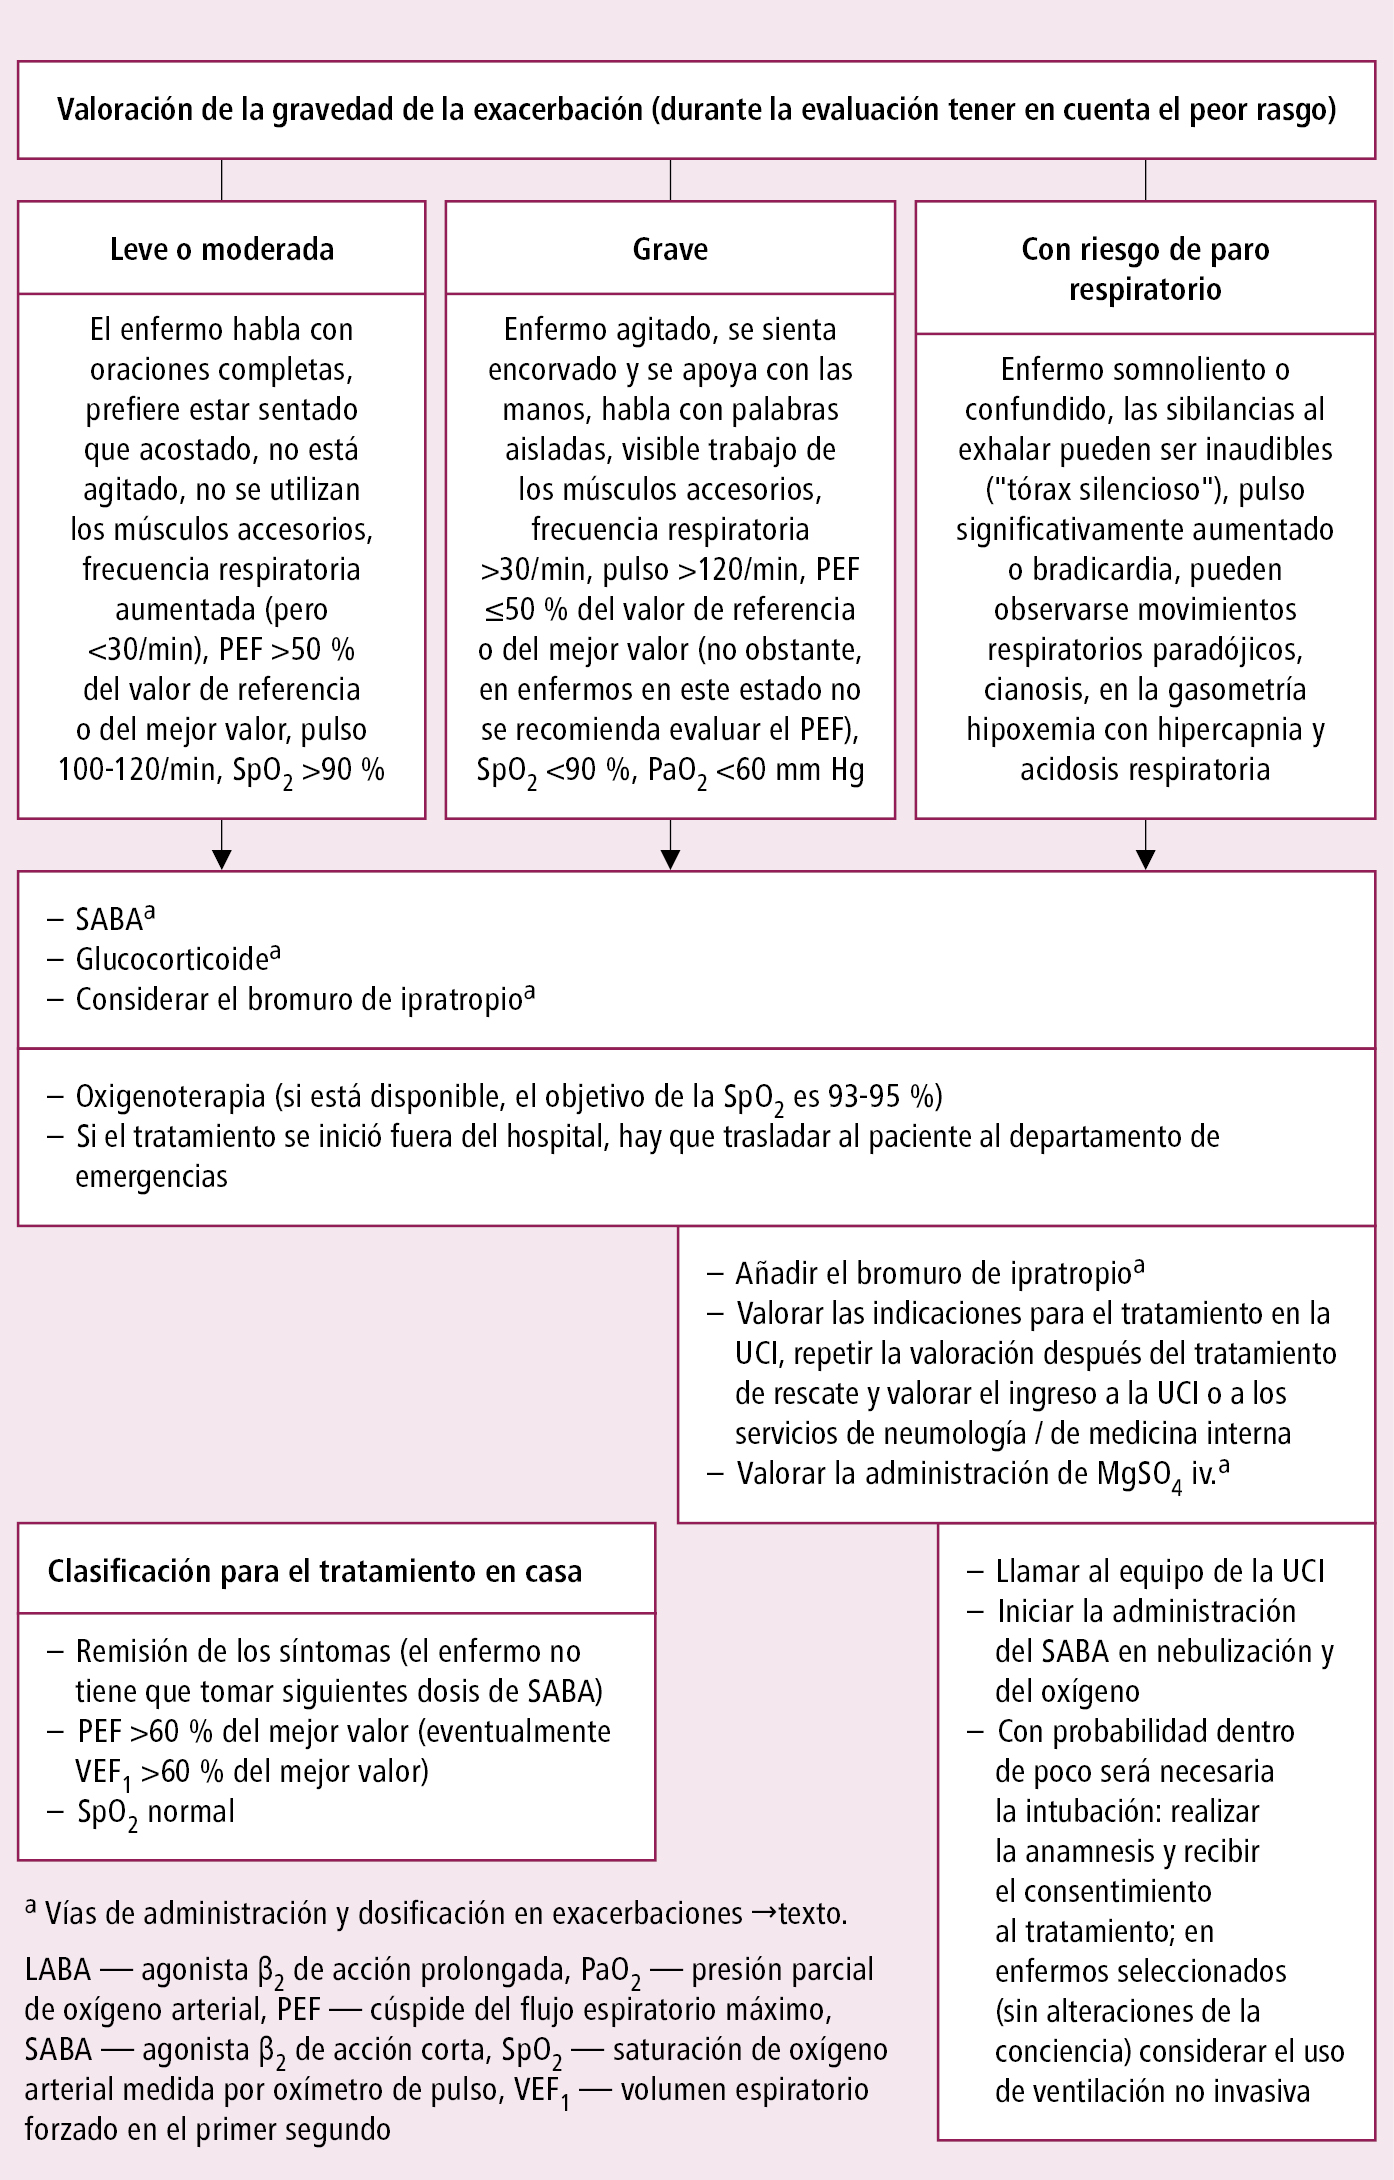    Fig. 3.9-2.  Algoritmo de actuación en exacerbaciones del asma, en función de la gravedad (según las guías de la GINA, modificado) 